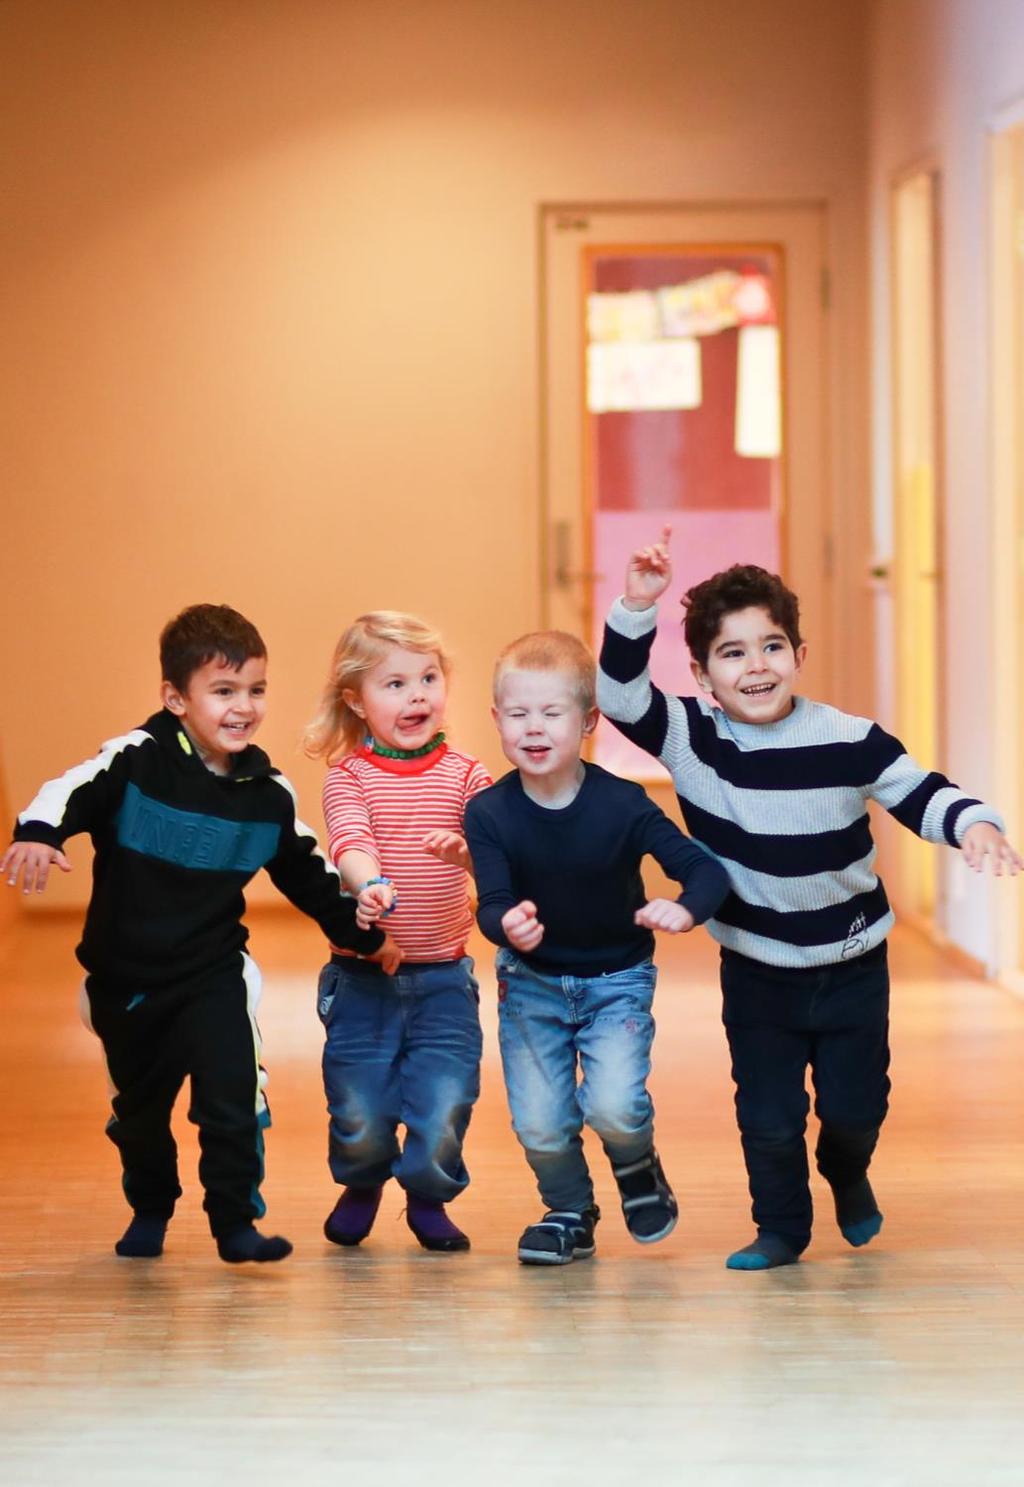 UTREDNING AV FIREÅRSKONSULTASJON I BARNEHAGE Gjennomføres i små kommuner, få har gjennomført evaluering. Barn som ikke går i barnehage får tilbud om ordinær konsultasjon på helsestasjonen.